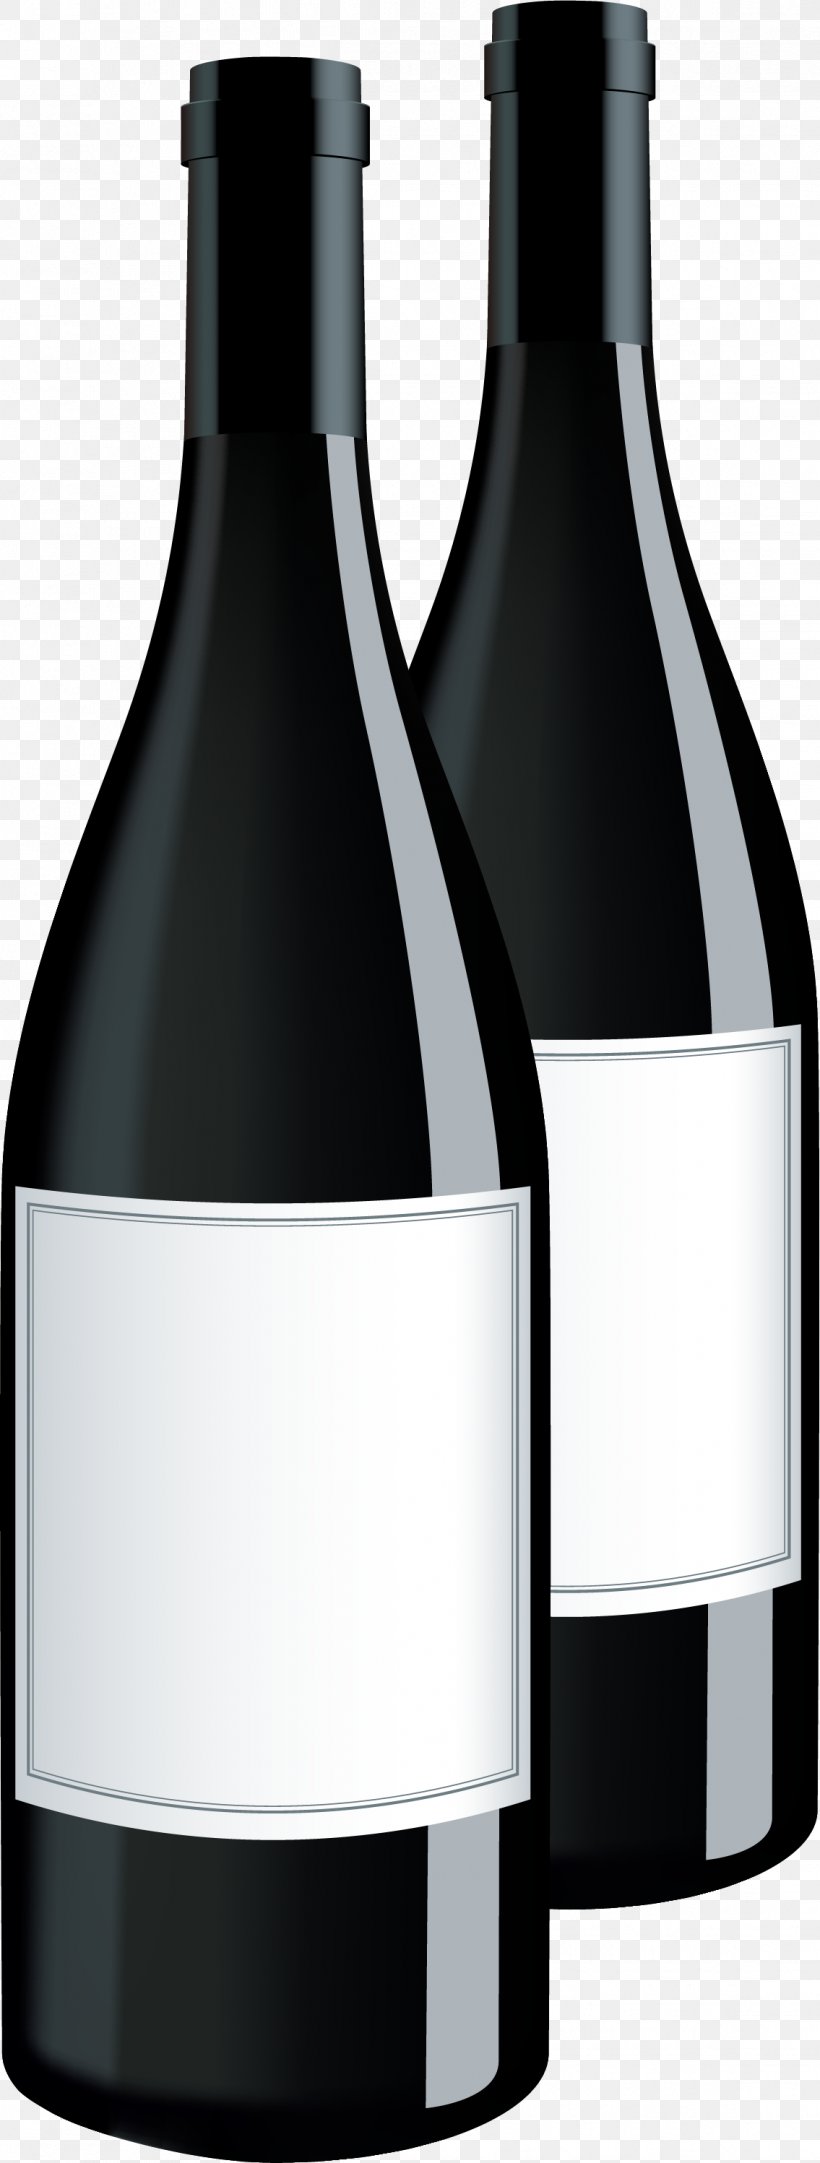 Red Wine Rosxe9 Terratico Di Bibbona Bottle, PNG, 1135x2995px, Red Wine, Bottle, Drink, Drinkware, Glass Bottle Download Free